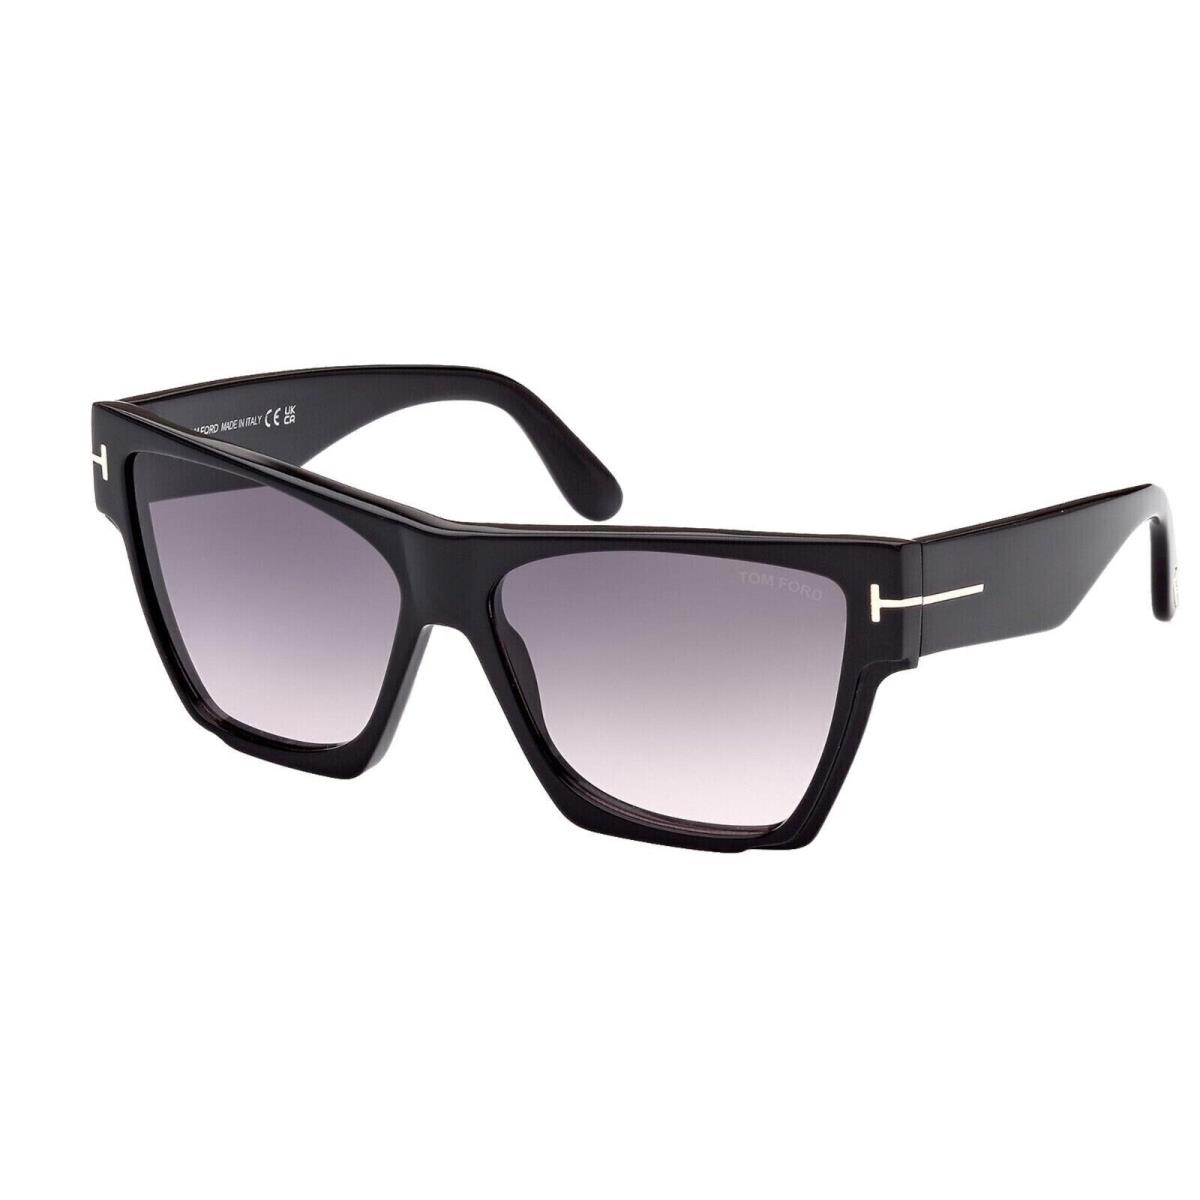 Tom Ford FT 0942 942 01B Dove Shiny Black Grey Gradient Lens Sunglasses 59mm - Black Frame, Gray Lens